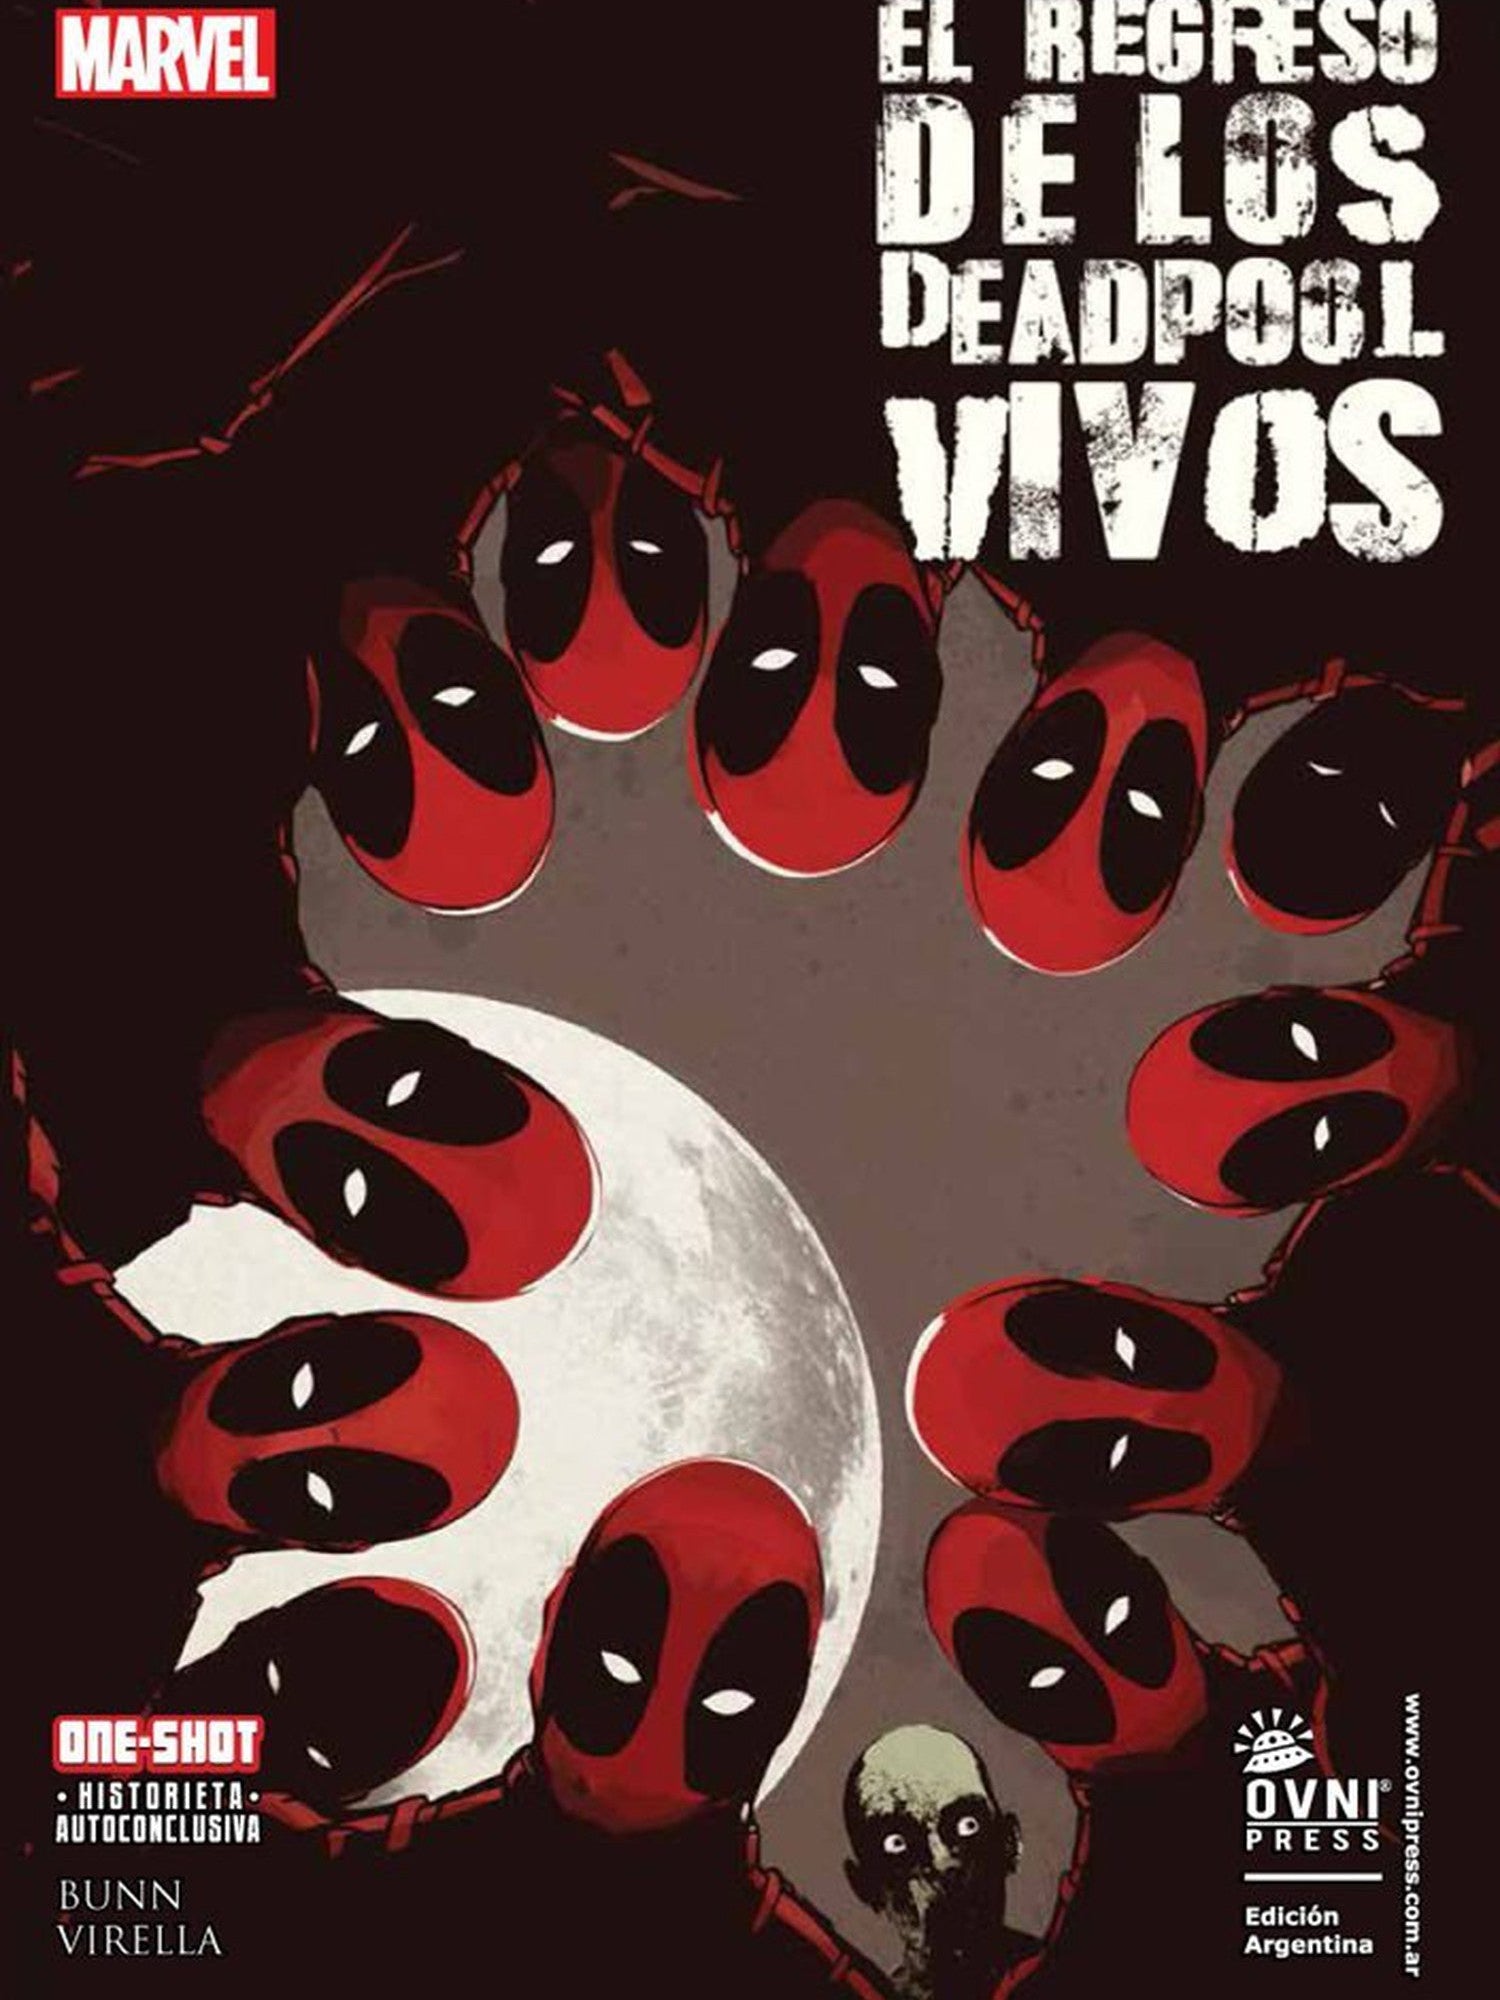 El Regreso de los Deadpool Vivos OVNI Press ENcuadrocomics